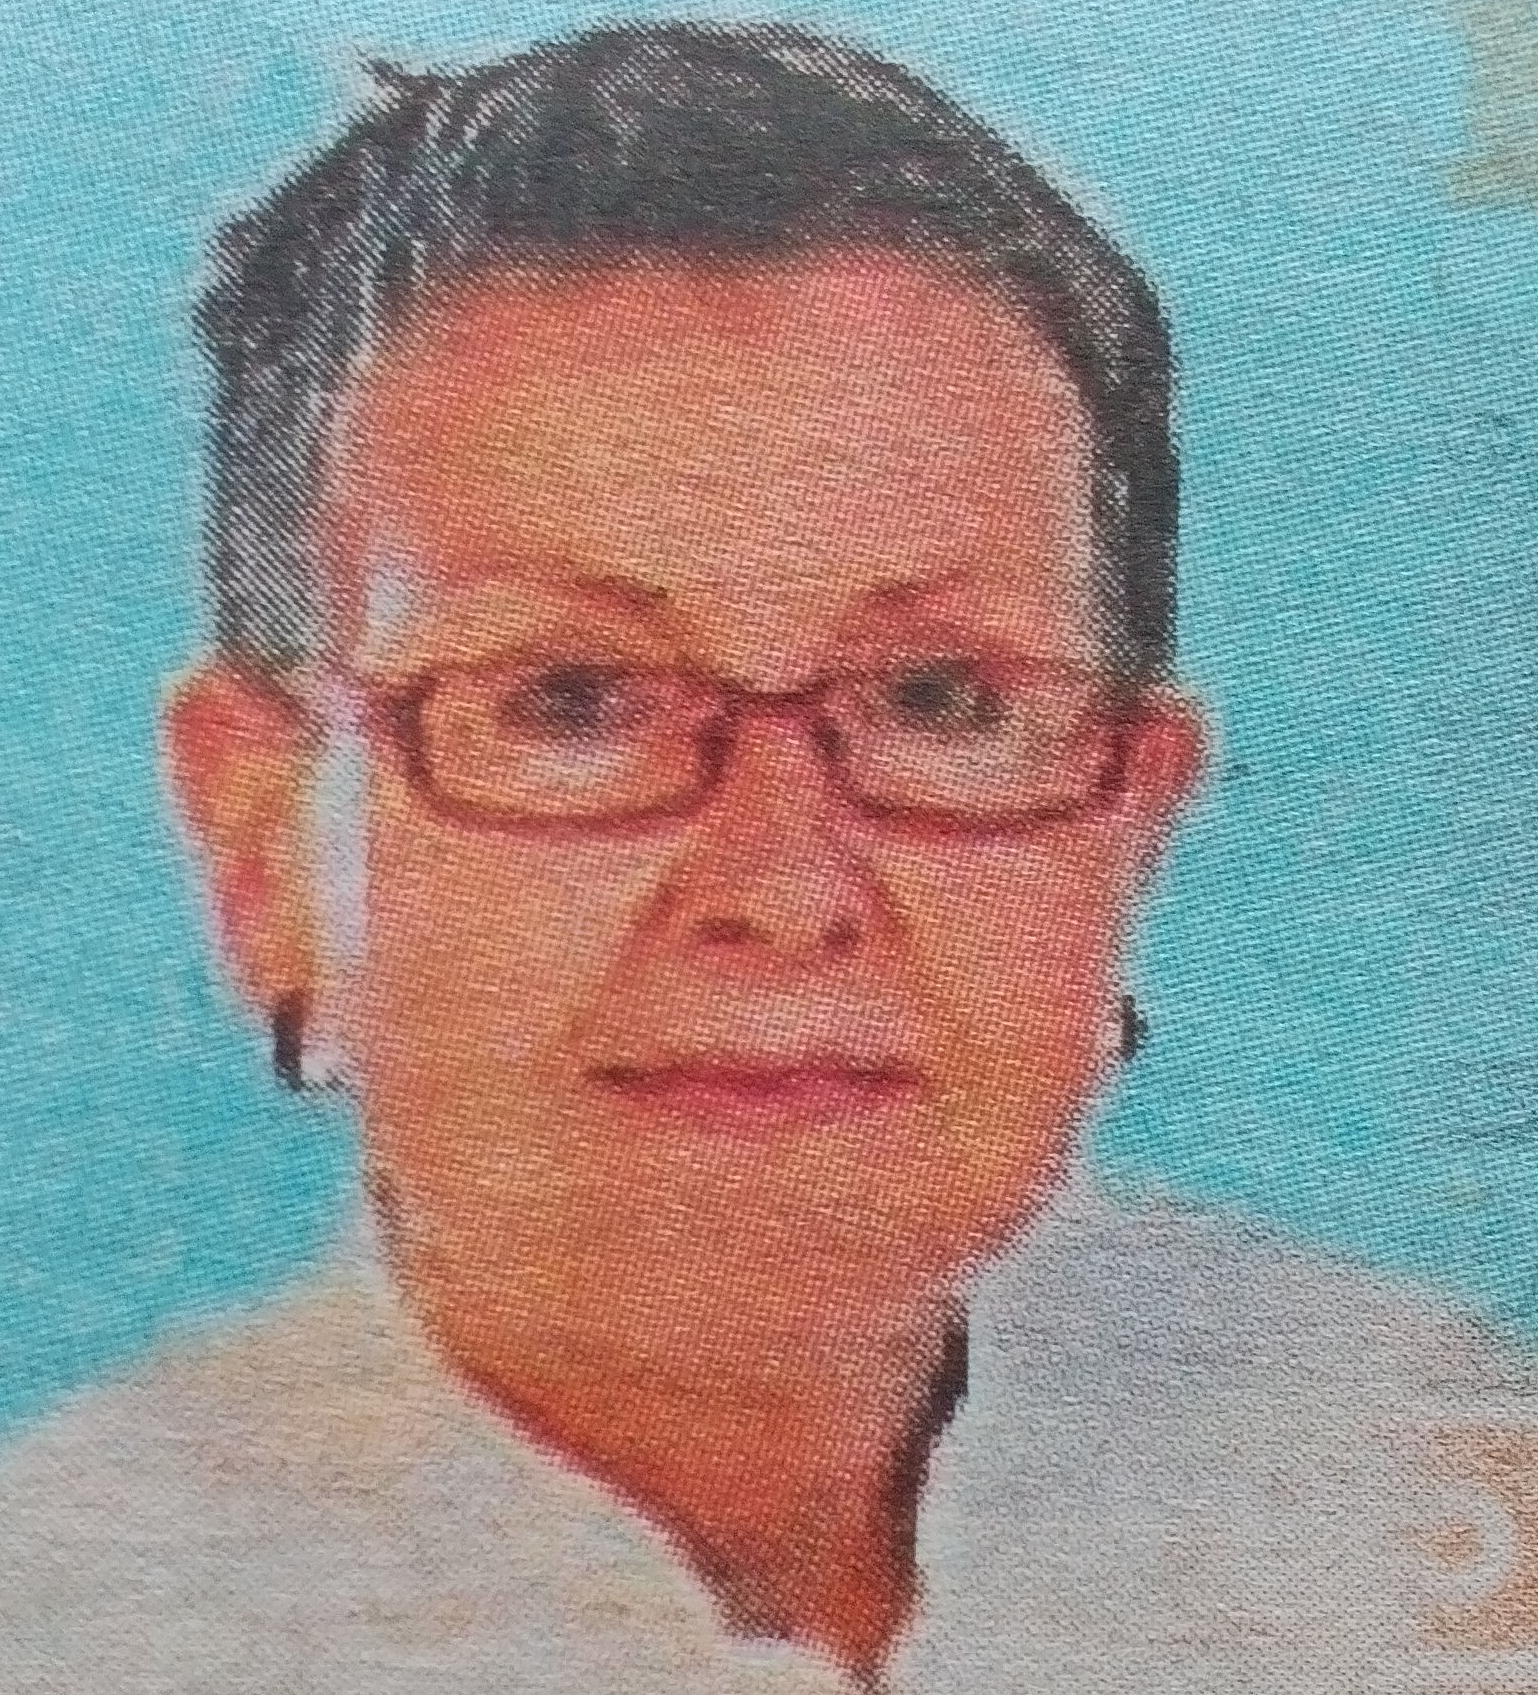 Obituary Image of Helga Kerl